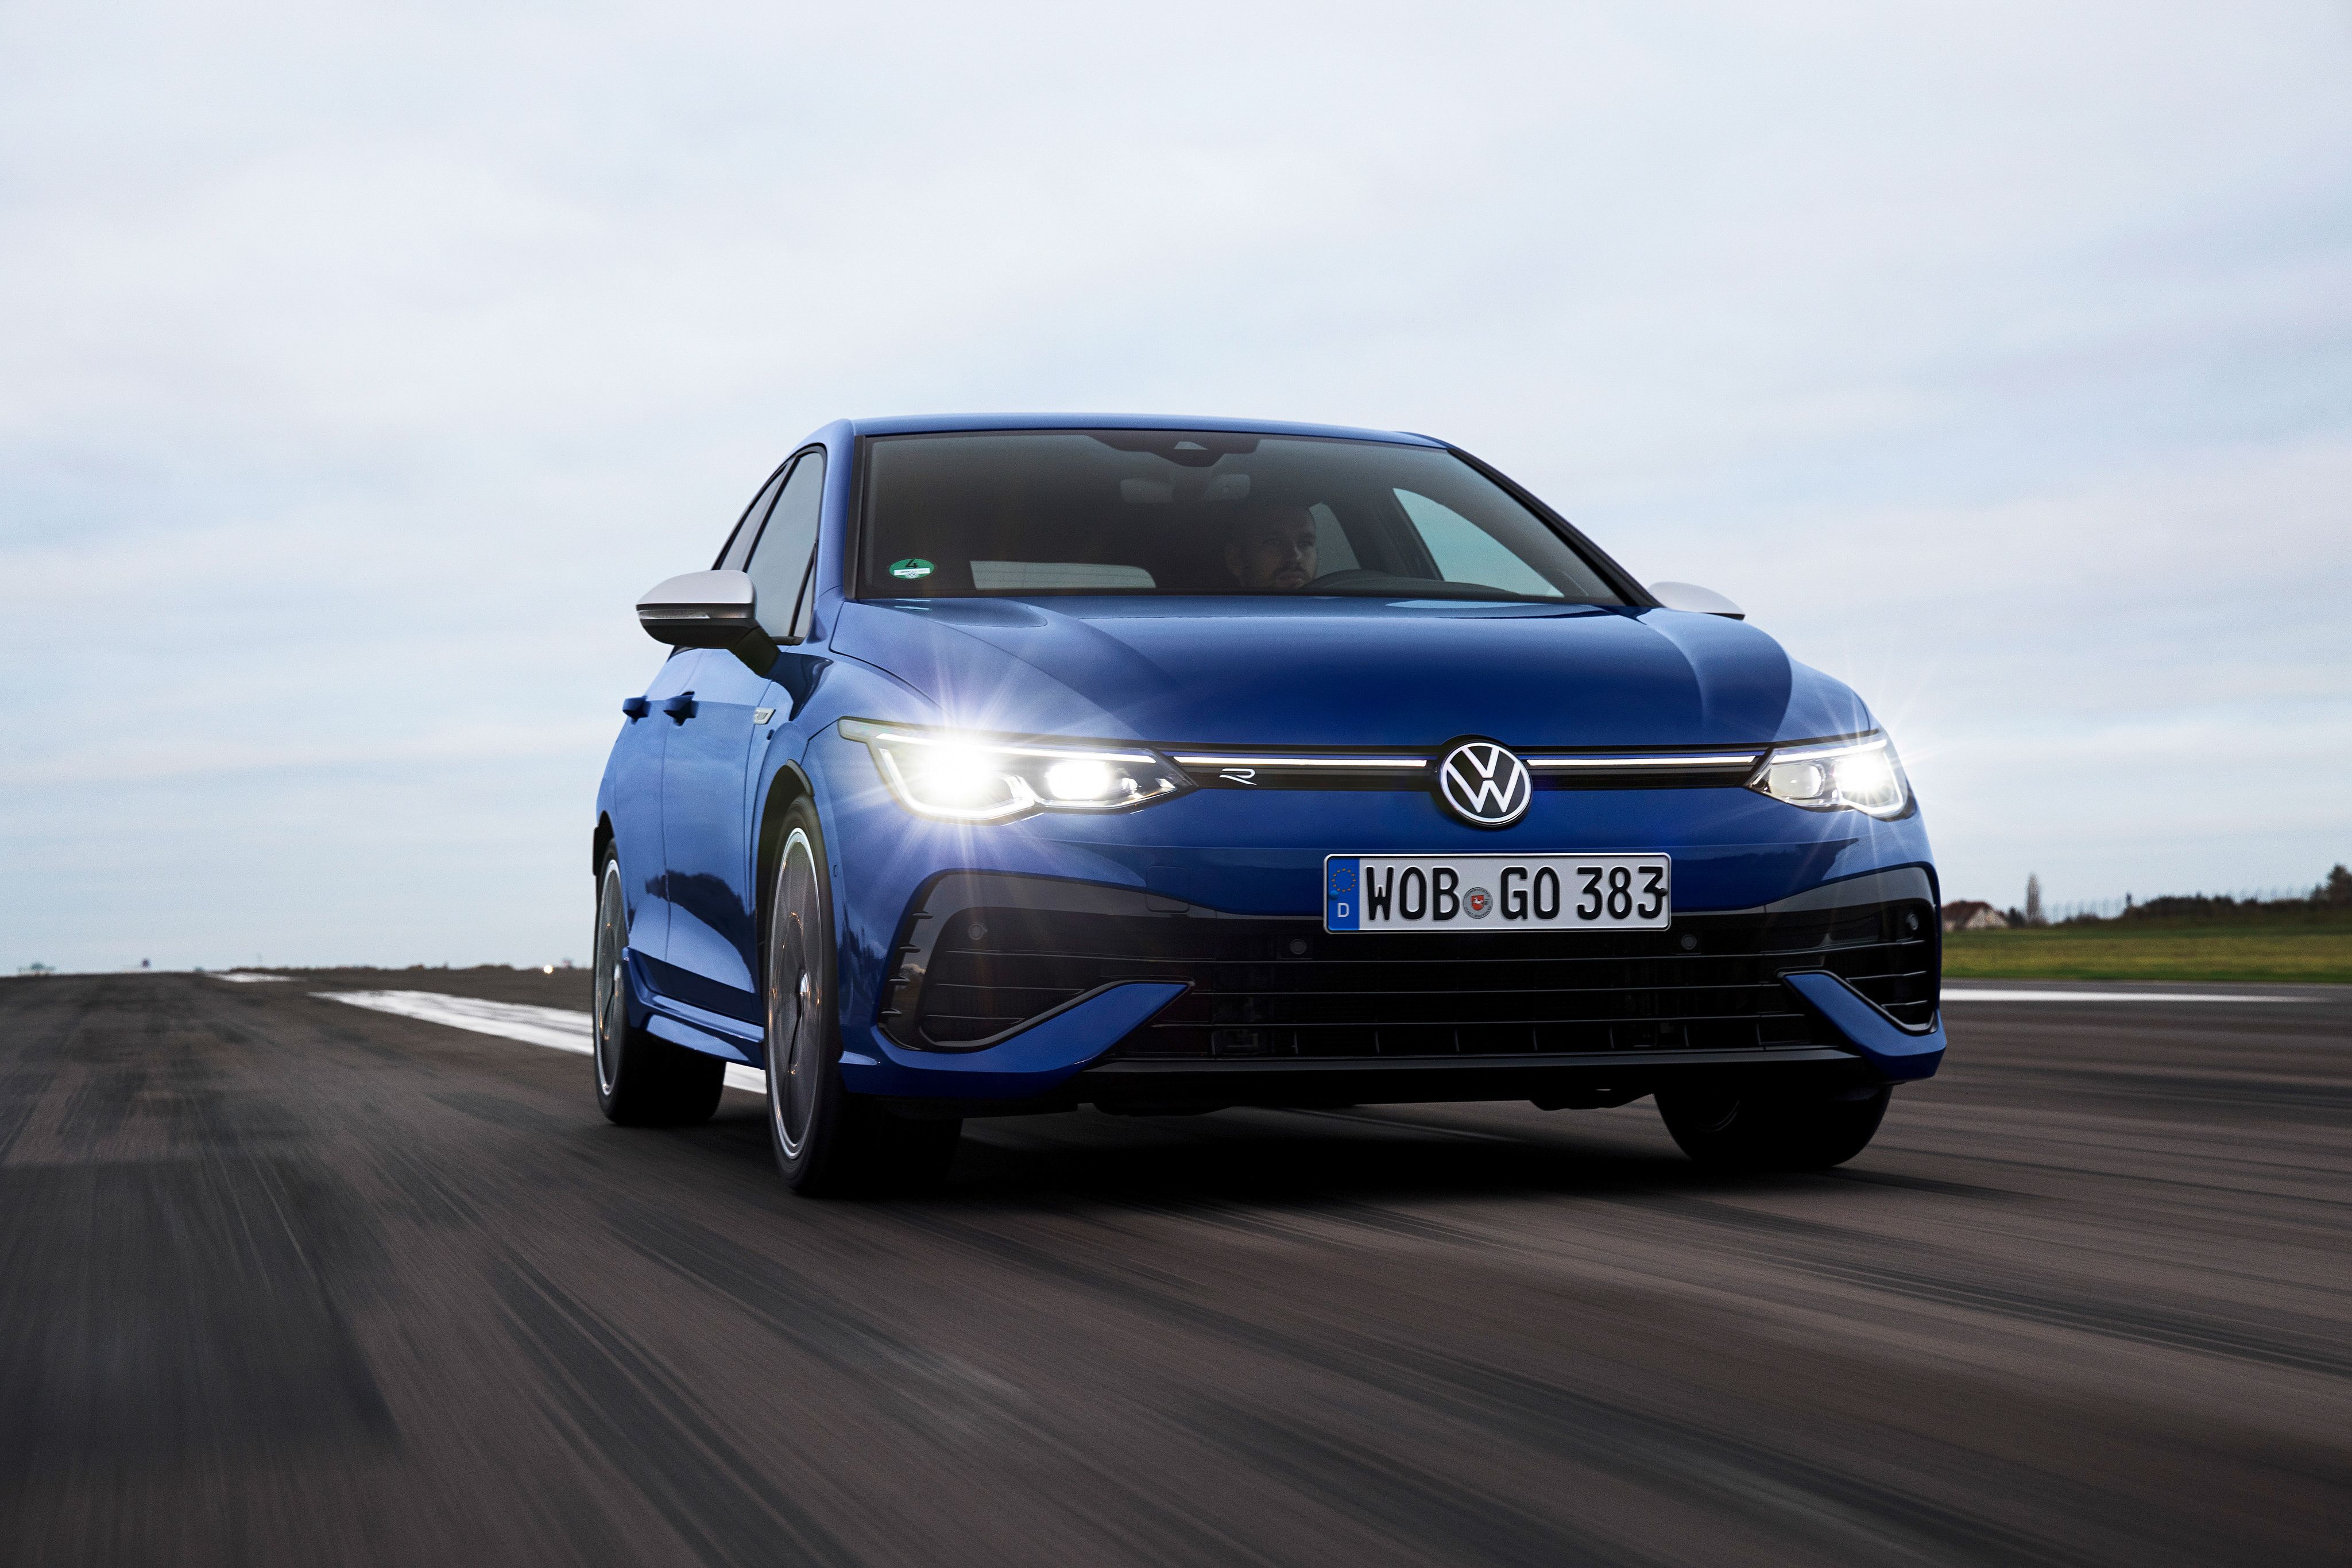 2022 Volkswagen Golf R review: An even hotter hatch - CNET